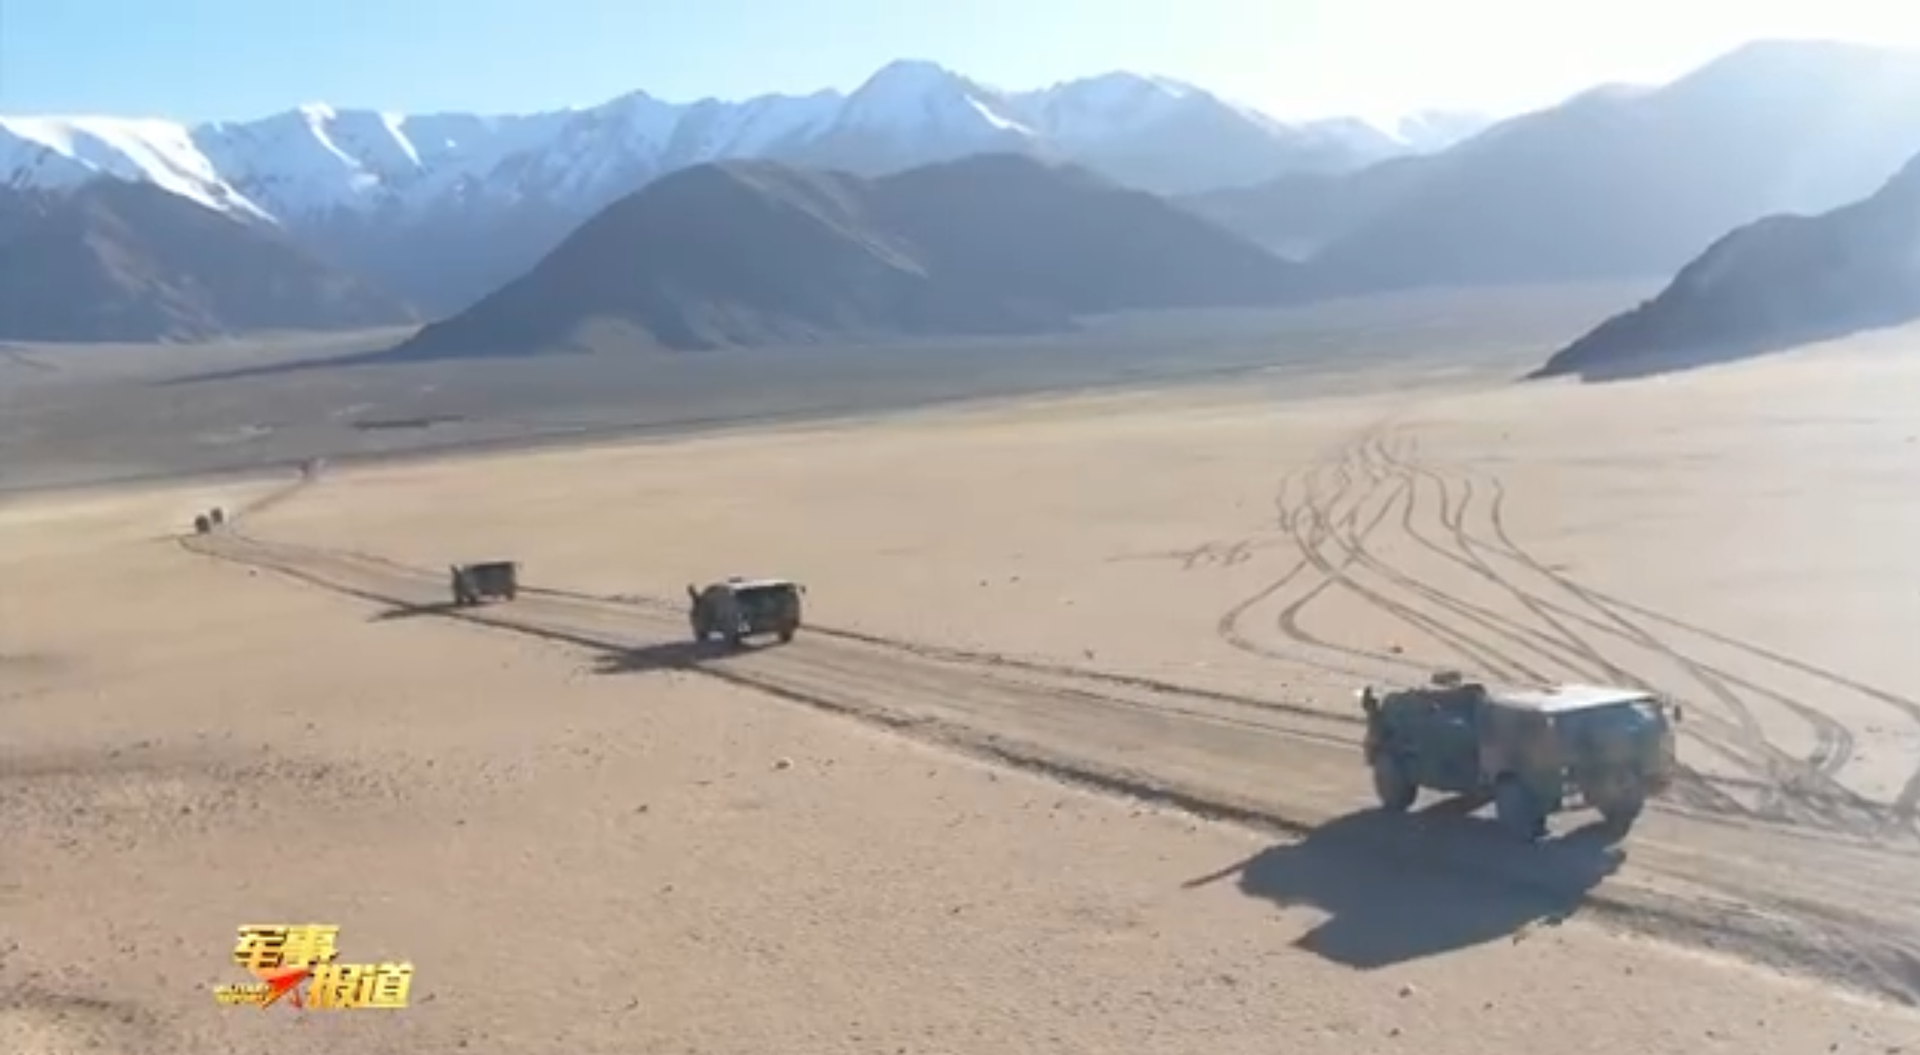 新疆军区某团炮兵分队驾驶新型车载榴弹炮集结。（中国央视《军事报道》节目视频截图）